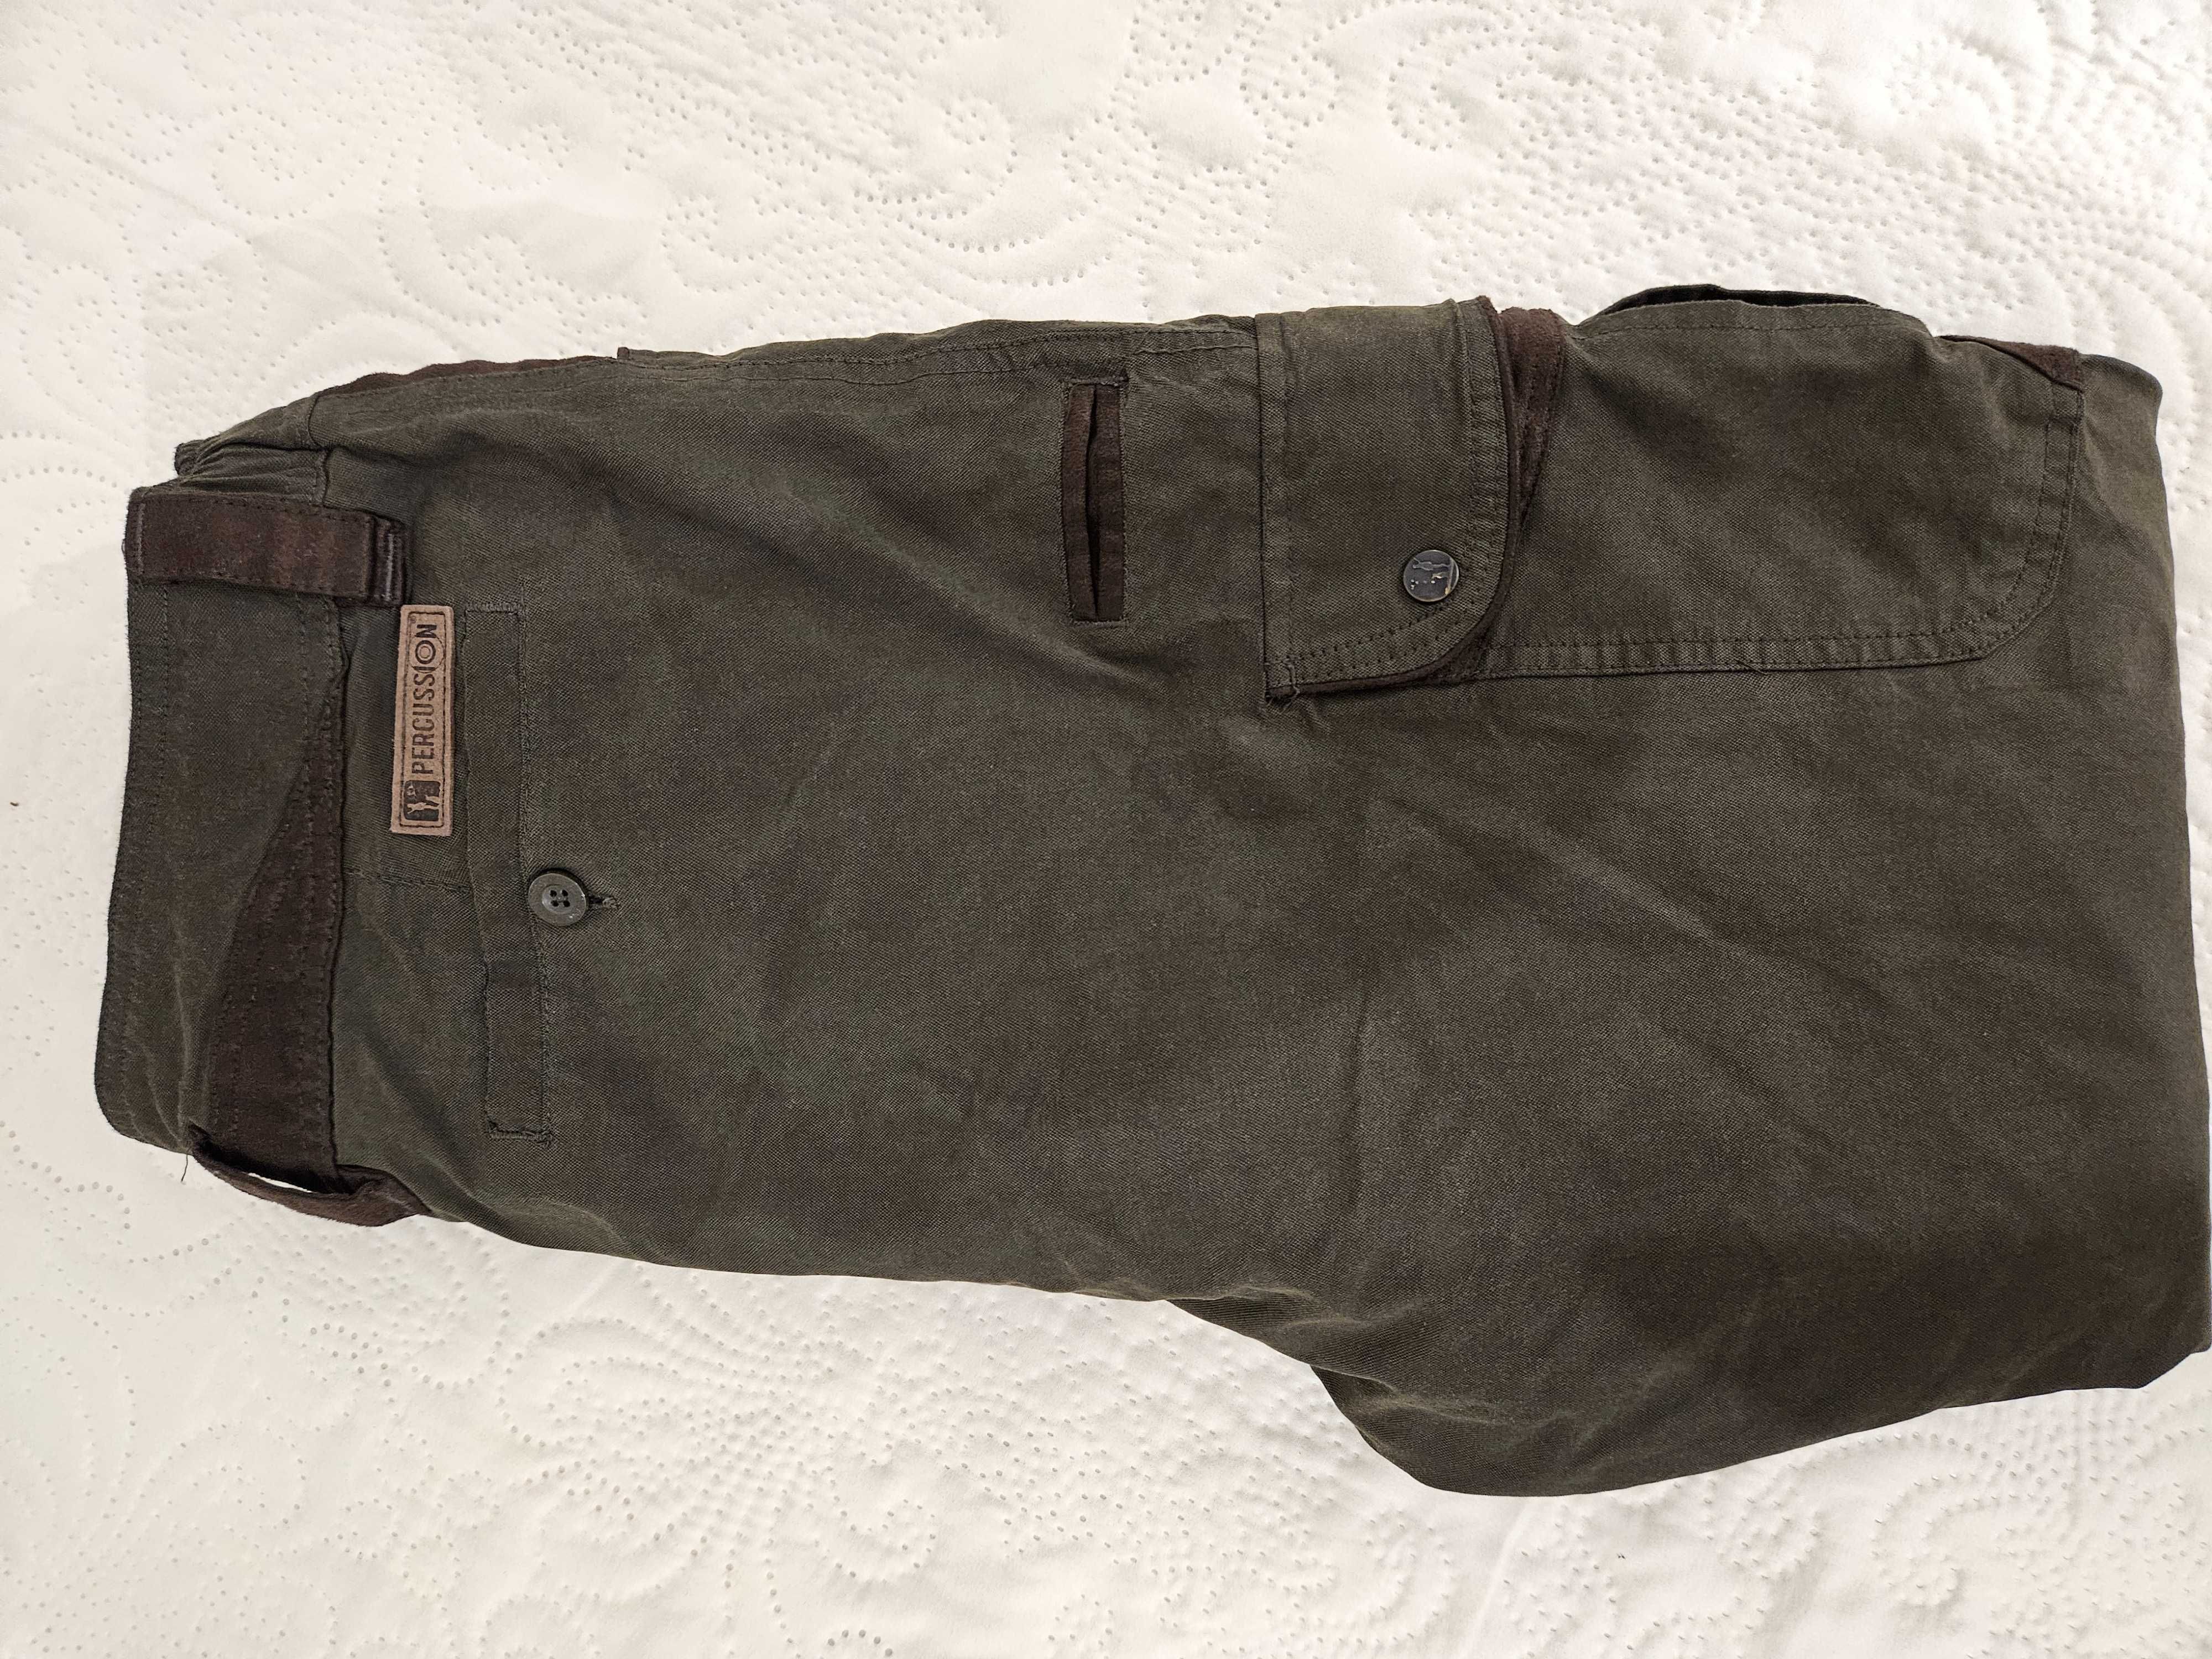 Ловни употребявани дрехи (един,два пъти)-3бр.панталони и 1бр. яке